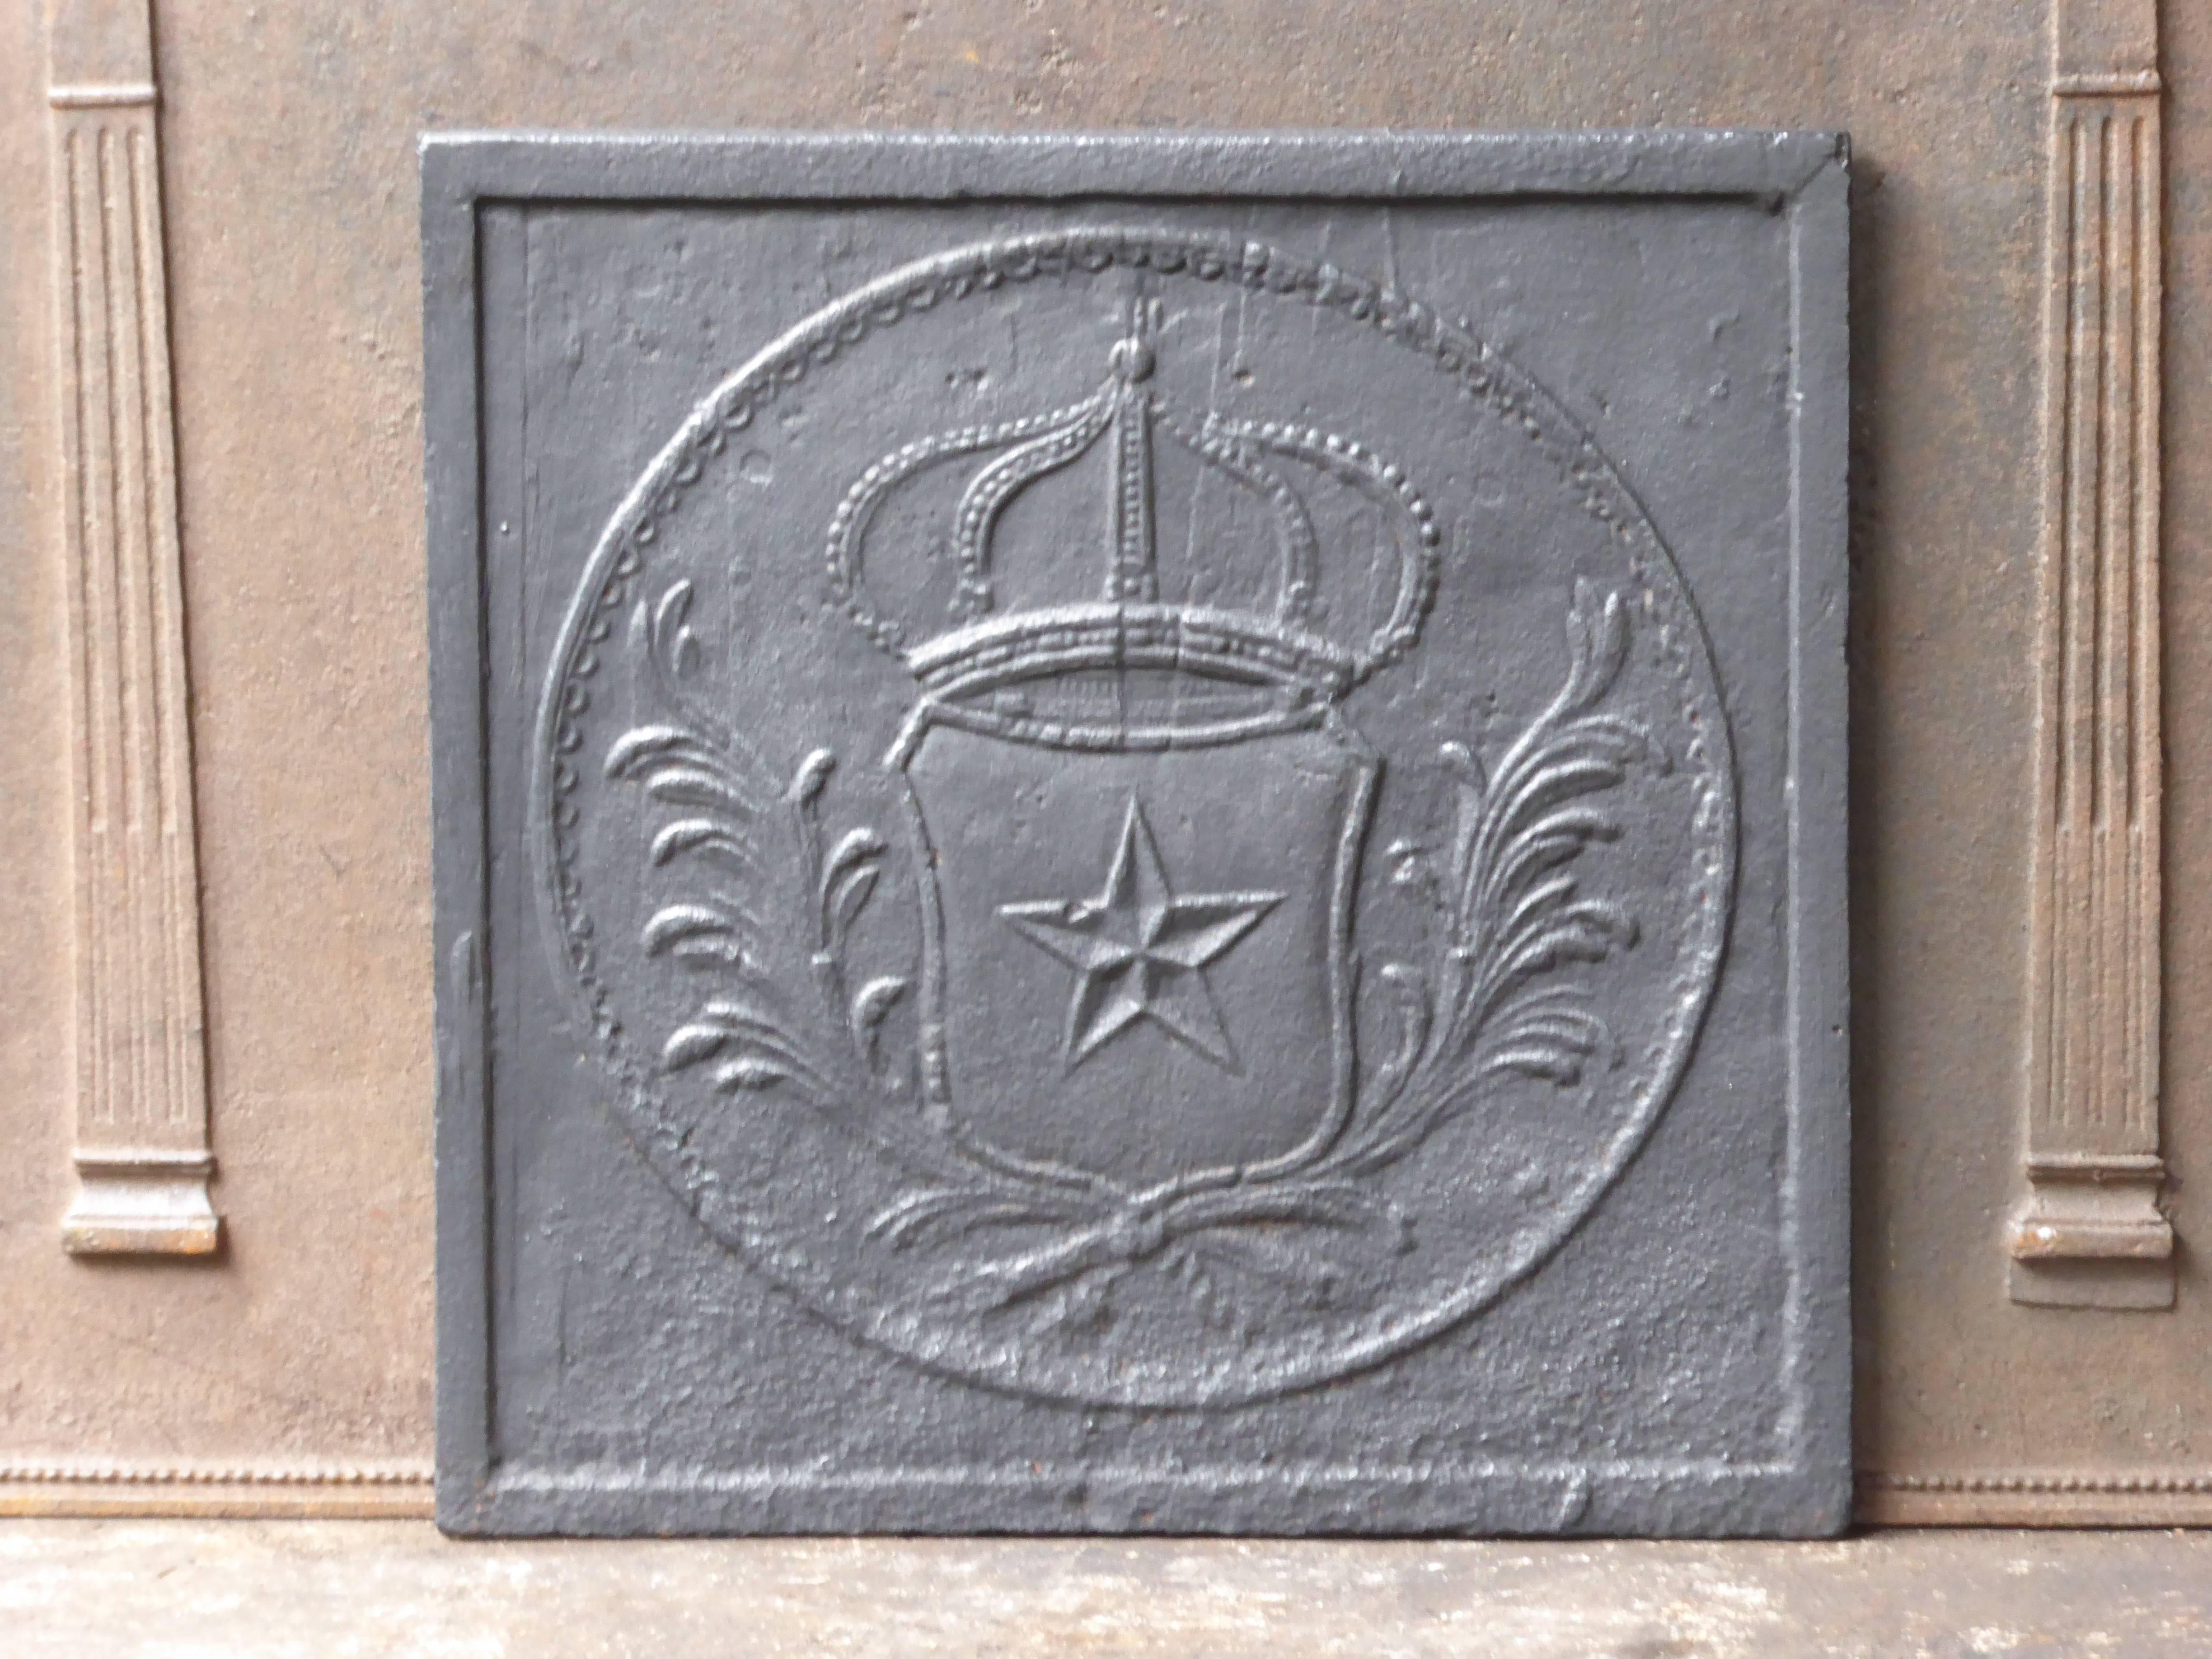 Französische Kaminplatte aus dem 19. Jahrhundert mit dem Wappen Frankreichs. Im Stil von Louis XIV.

Wir haben eine einzigartige und spezialisierte Sammlung von antiken und gebrauchten Kaminzubehör, bestehend aus mehr als 1000 Inseraten bei 1stdibs.